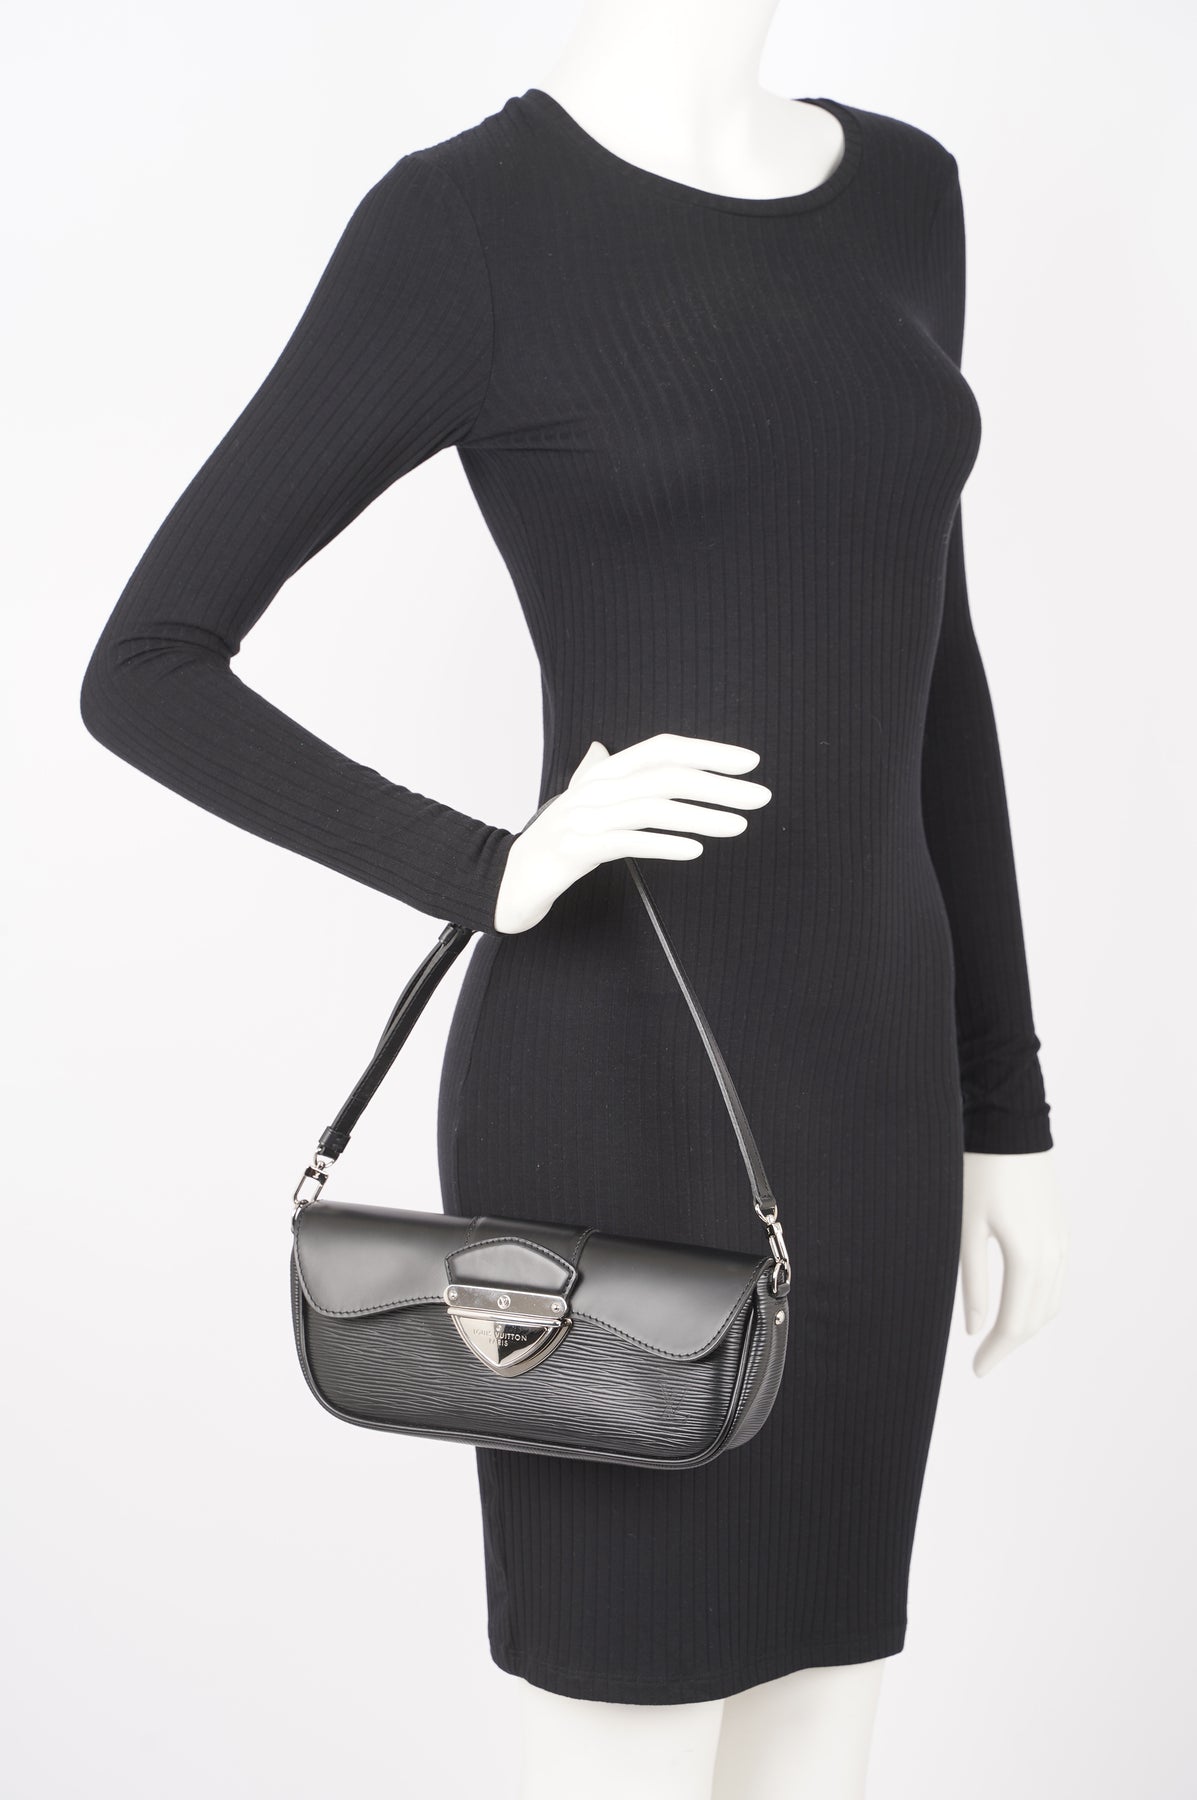 Authentic Louis Vuitton Black Epi Montaigne Clutch Bag